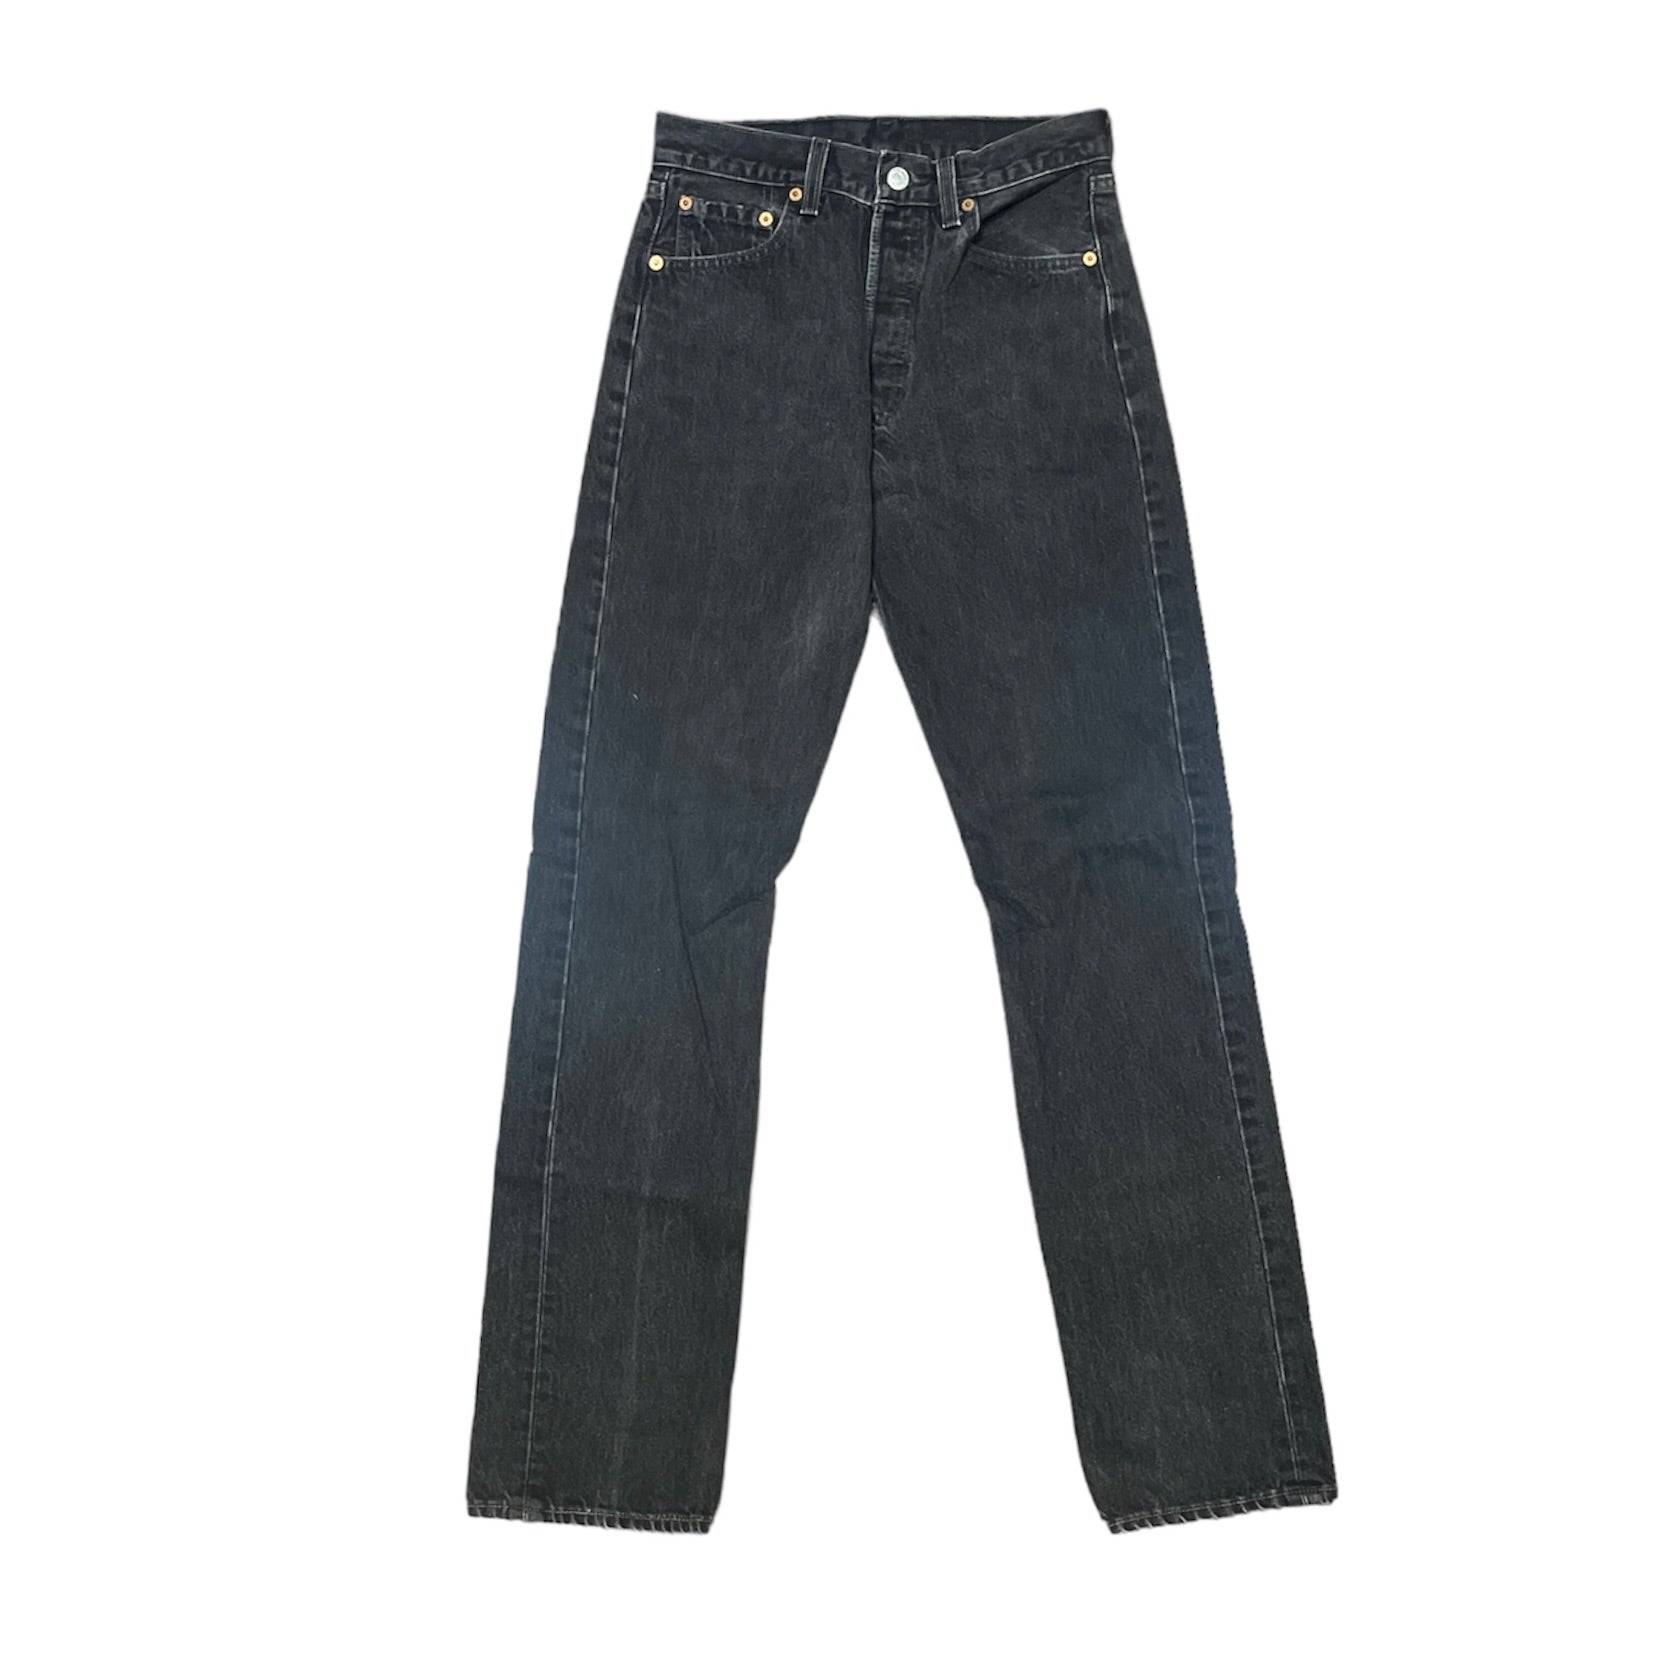 Vintage Levis 501 Vintage Black Jeans (W29/L34)